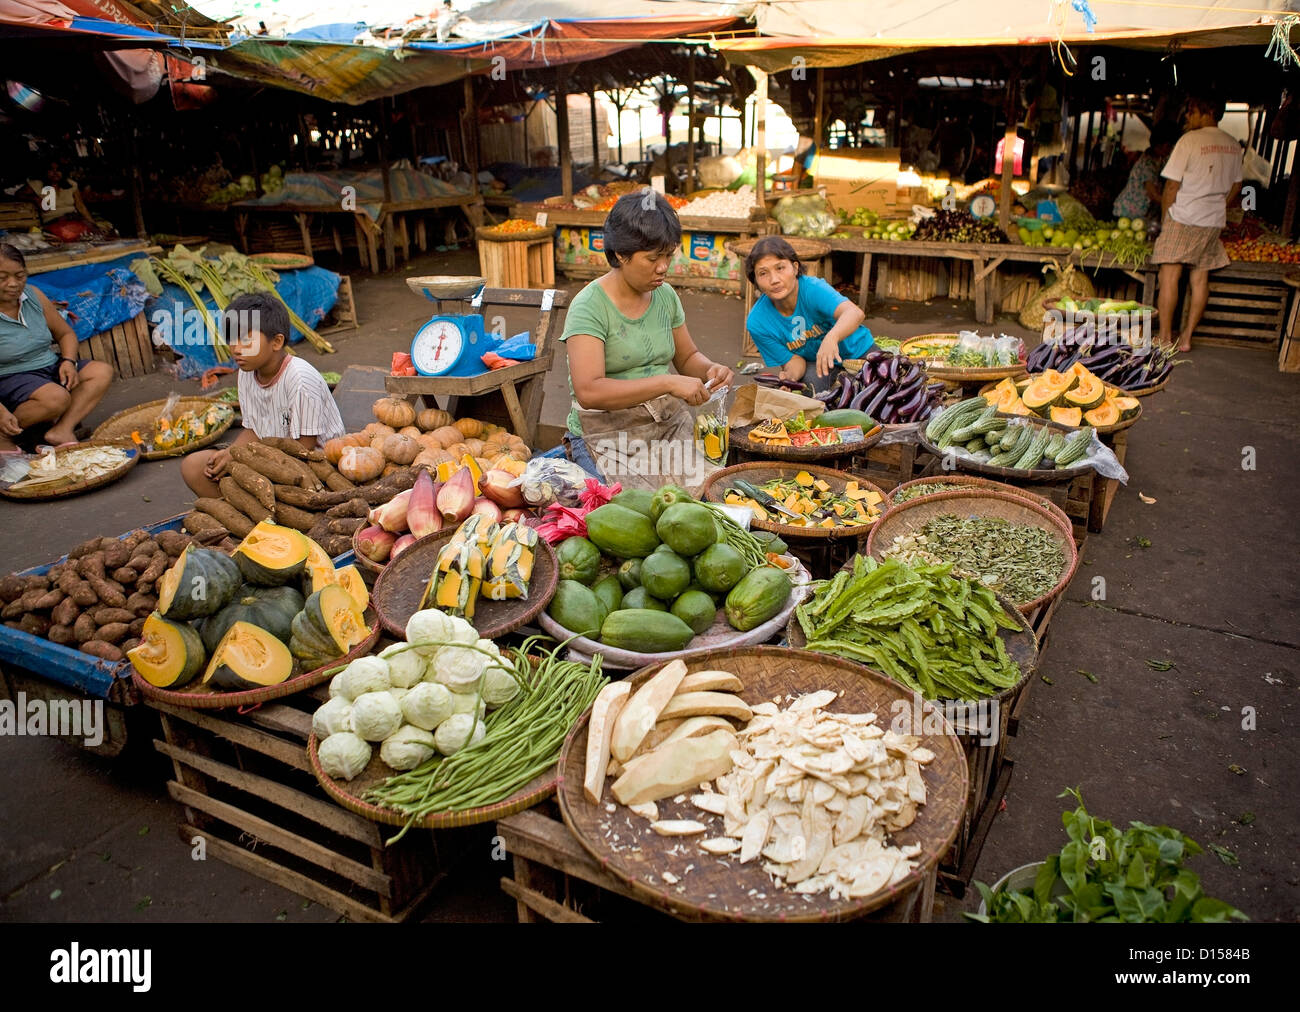 Go Fresh mercado móvil ofrece frutas y verduras frescas 